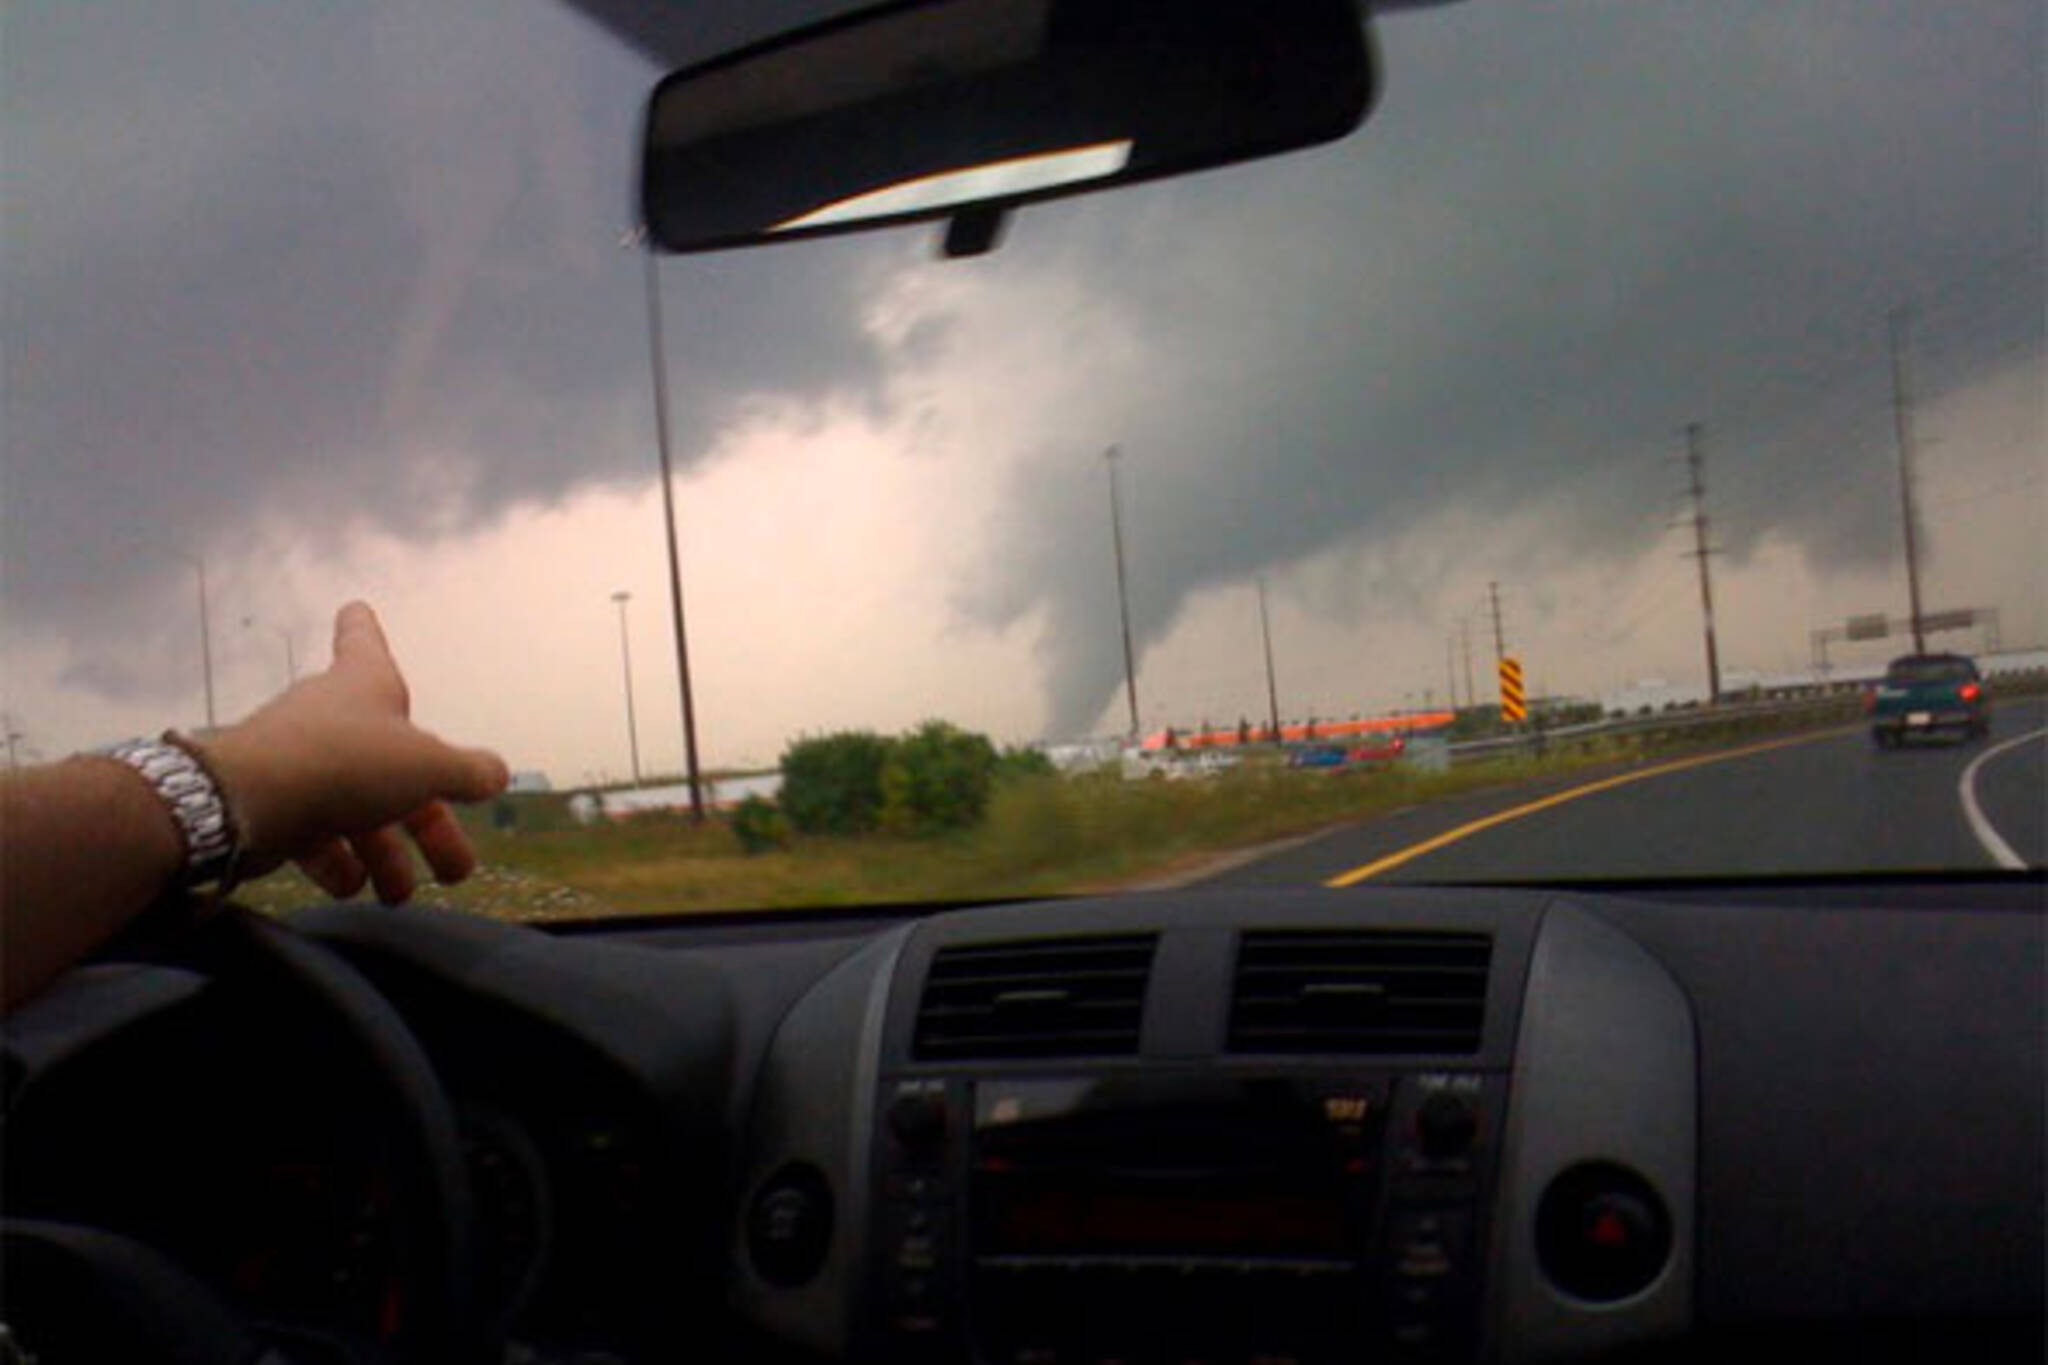 toronto tornado august 20th